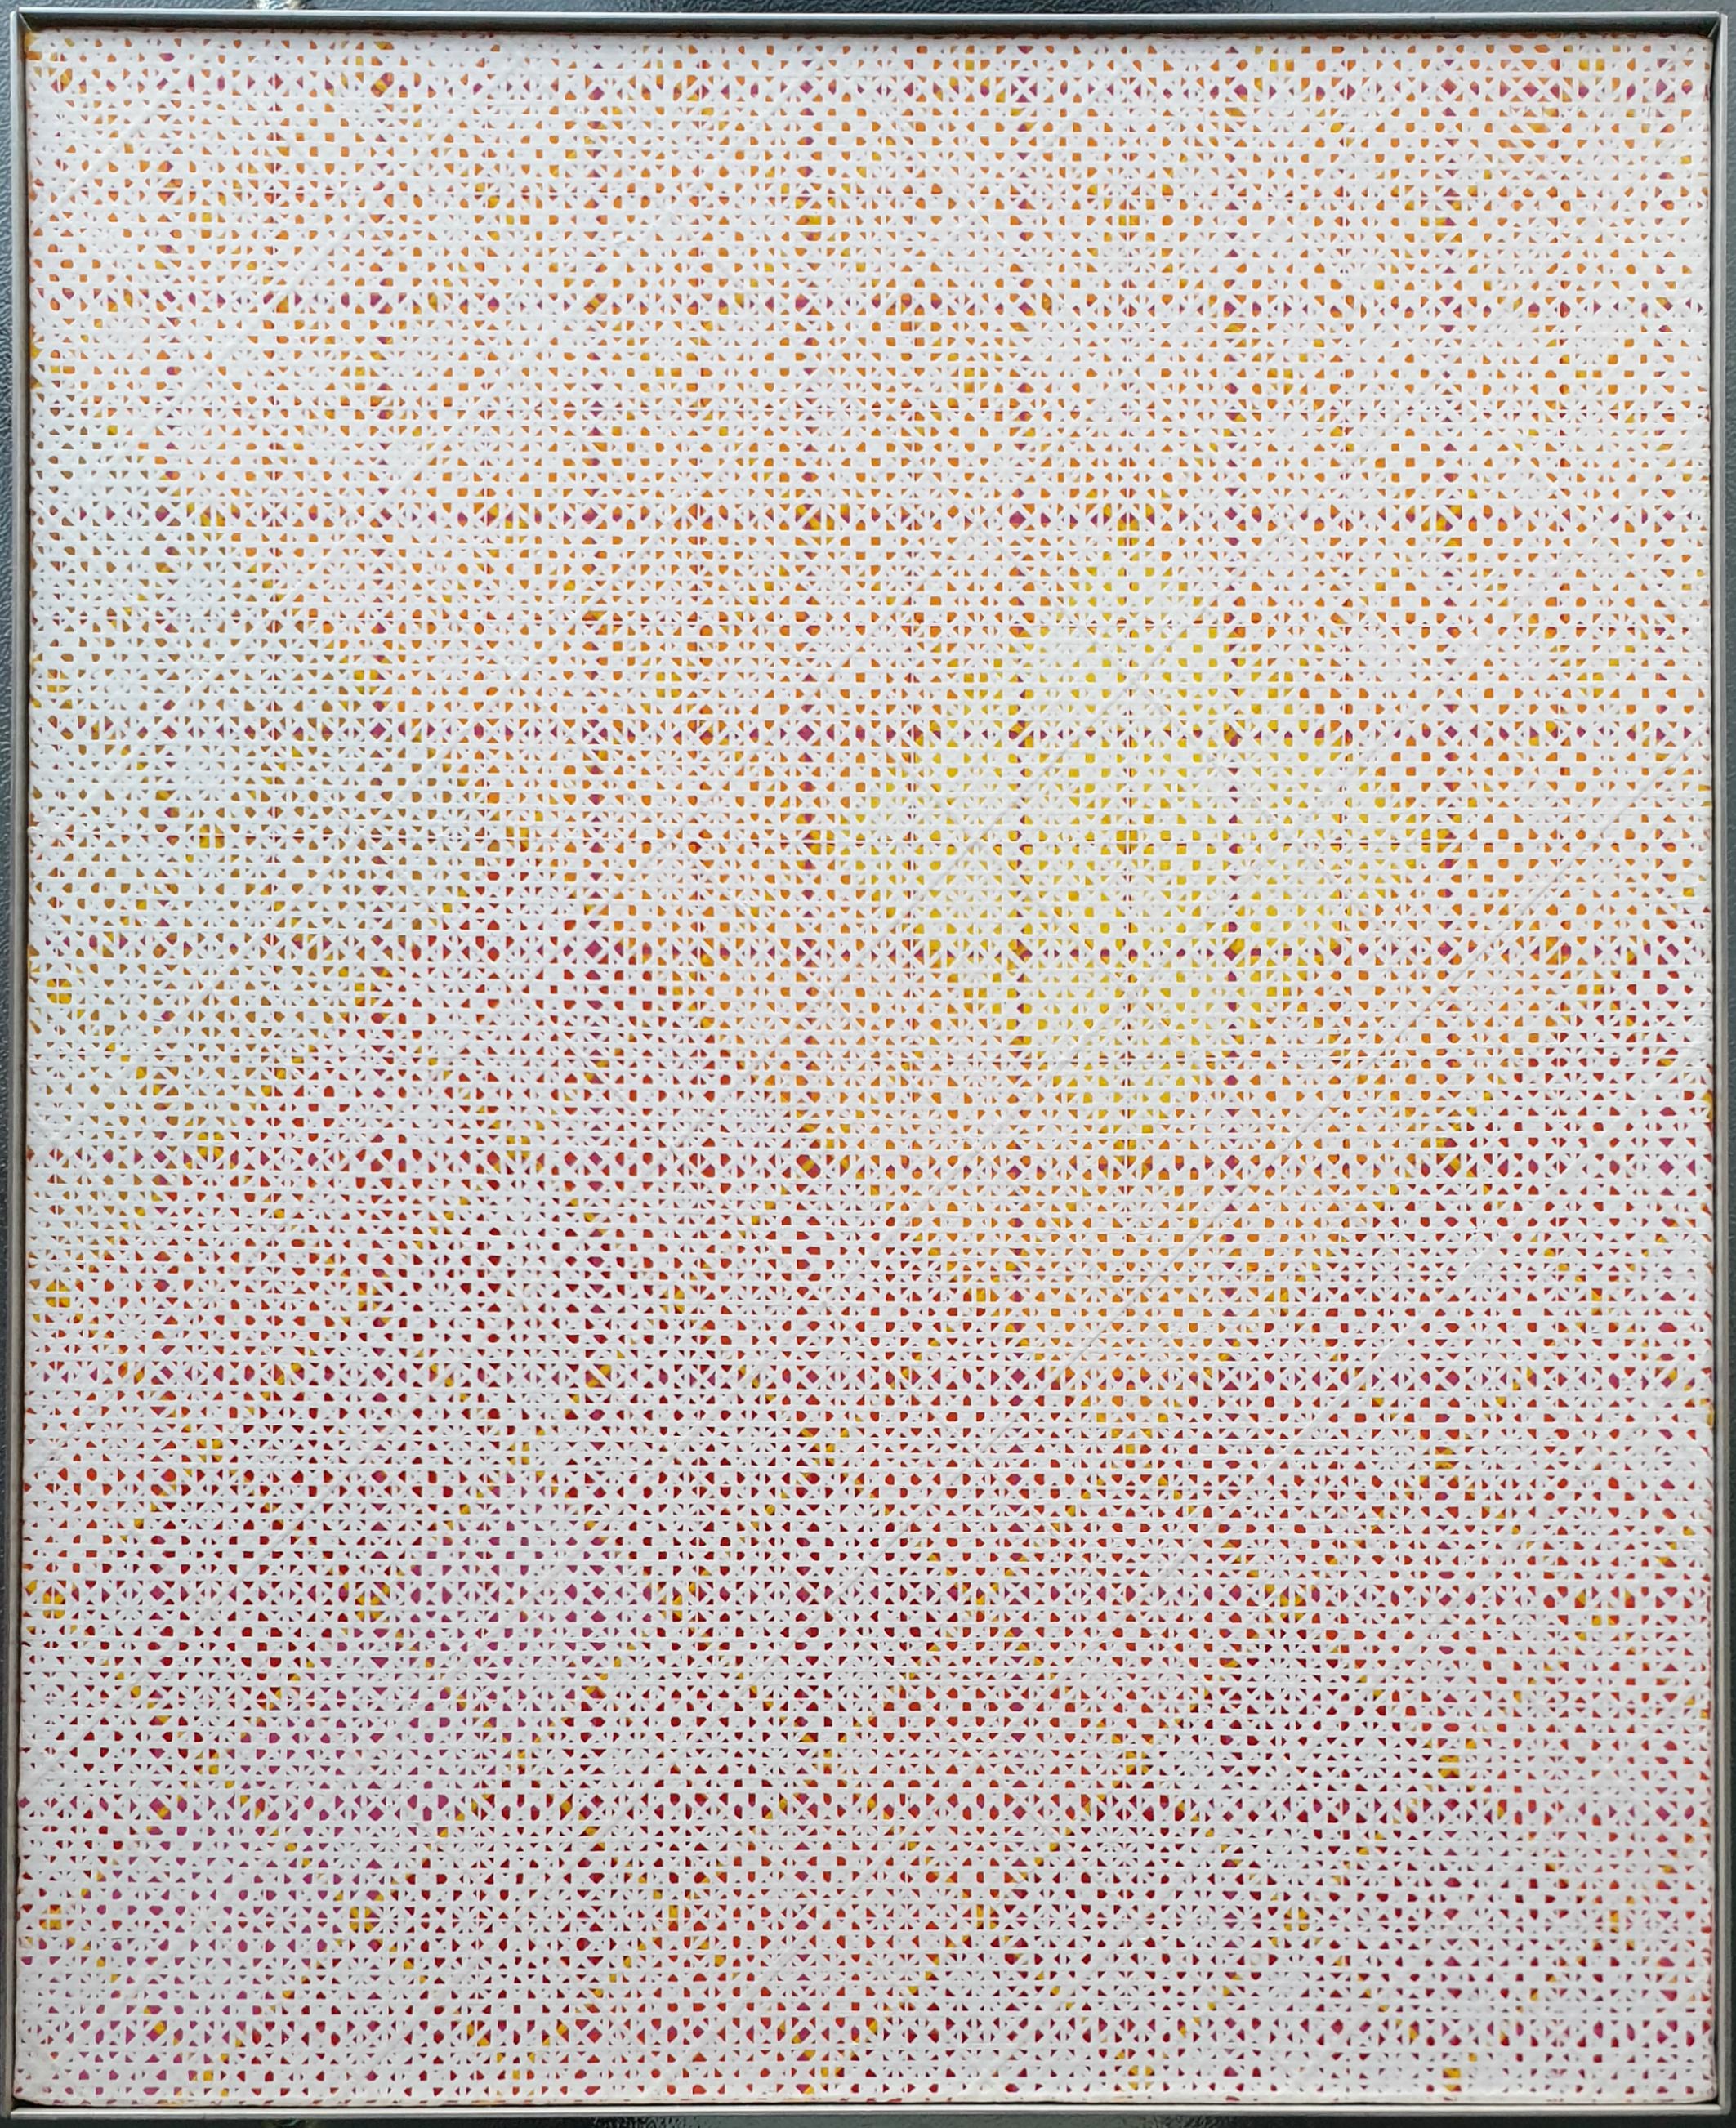 Désert (Künstlerinventar Nr. 121) ist ein einzigartiges mittelgroßes modernes abstraktes geometrisches Gemälde auf Leinwand des französischen Künstlers Charles Bézie. Das Gemälde ist ein Frühwerk aus seiner Déserts-Serie und ein schönes Beispiel für